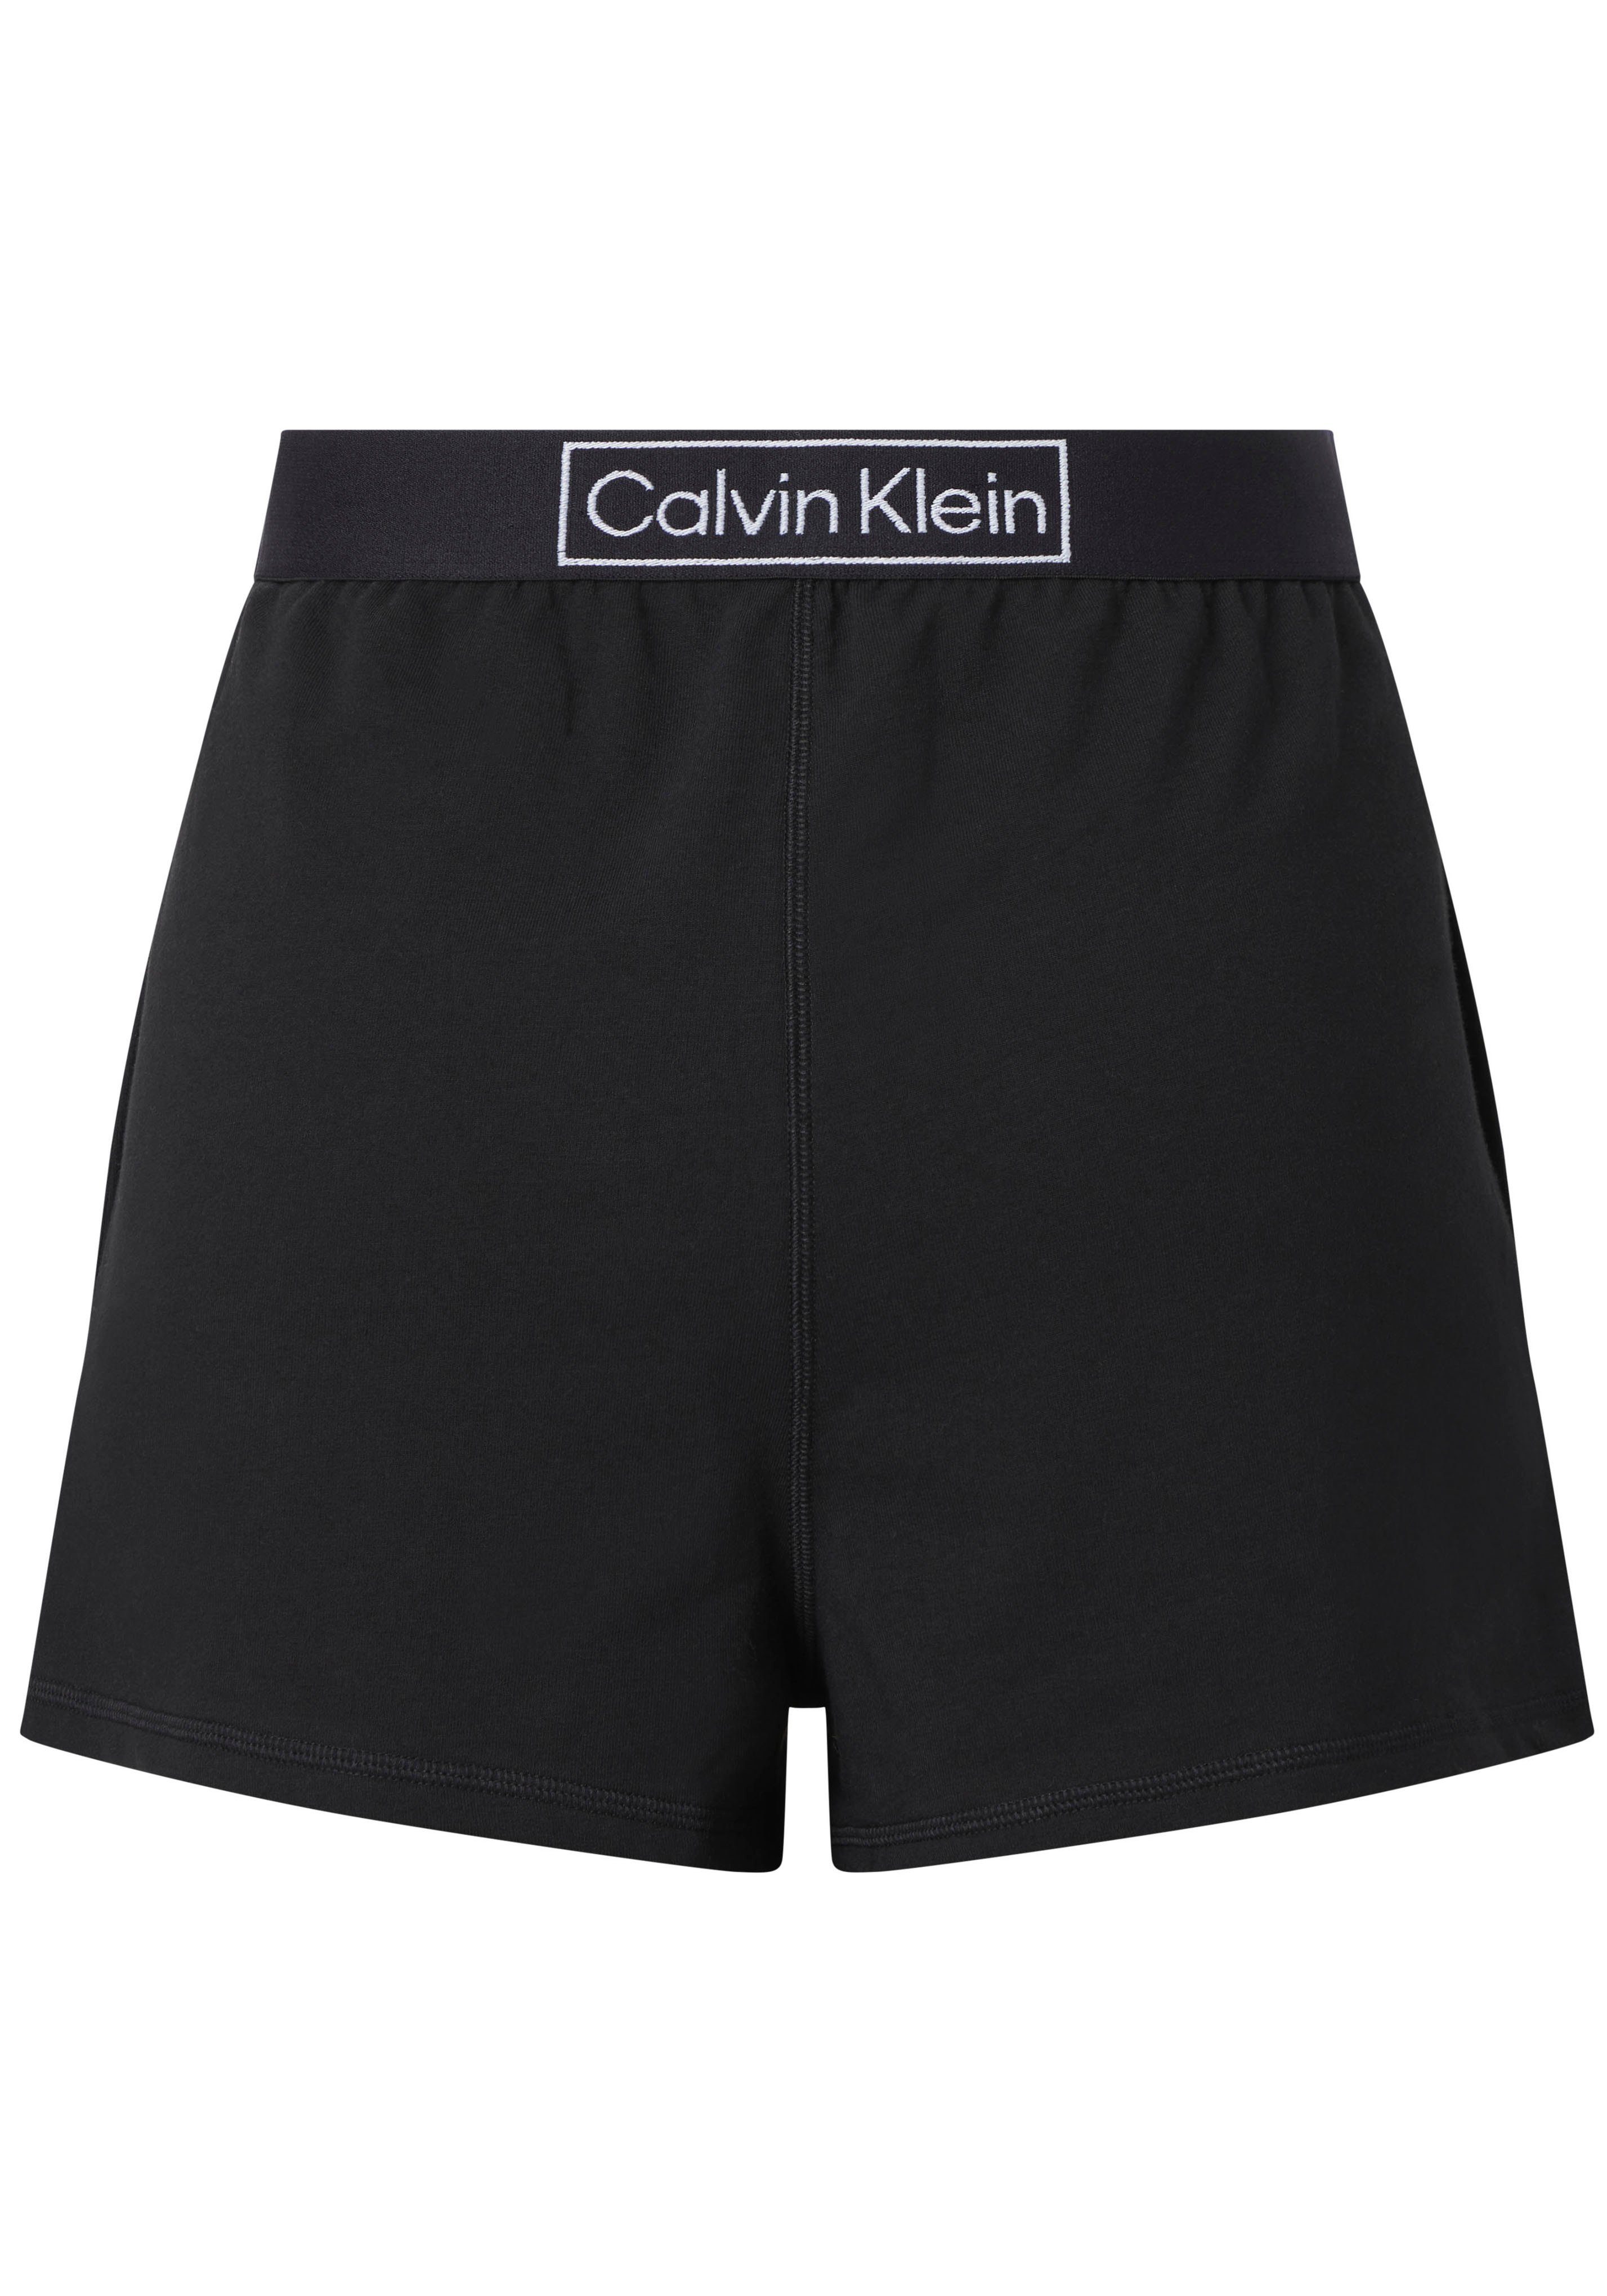 Damen Hosen Calvin Klein Schlafshorts mit bequemen Gummizug